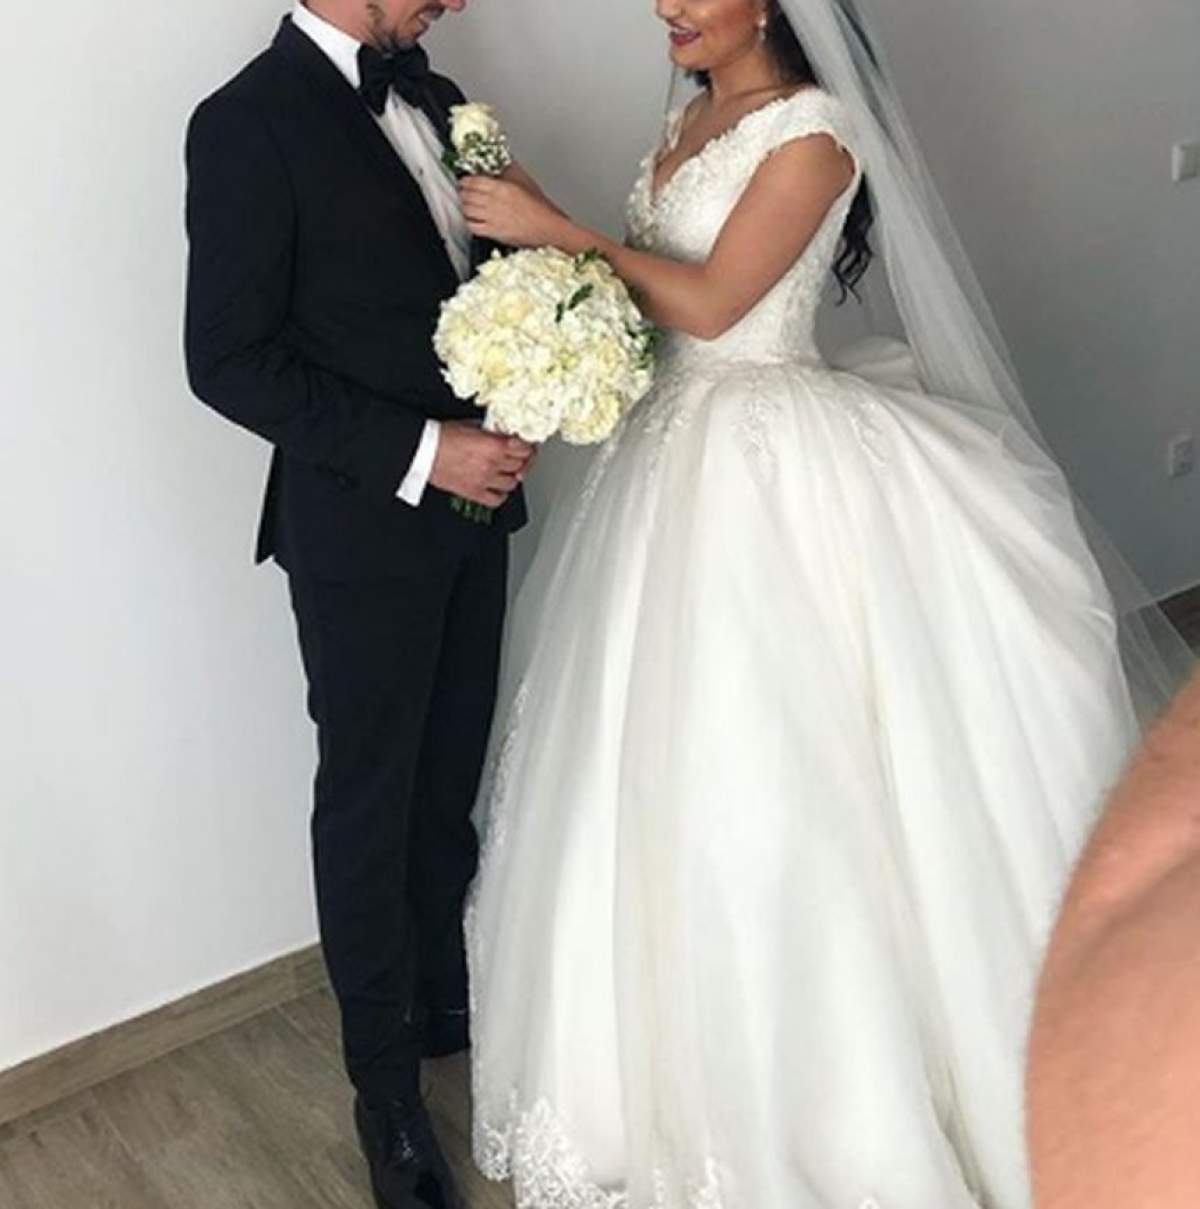 Nuntă mare în showbizul românesc! Doi artişti de la noi s-au căsătorit joi